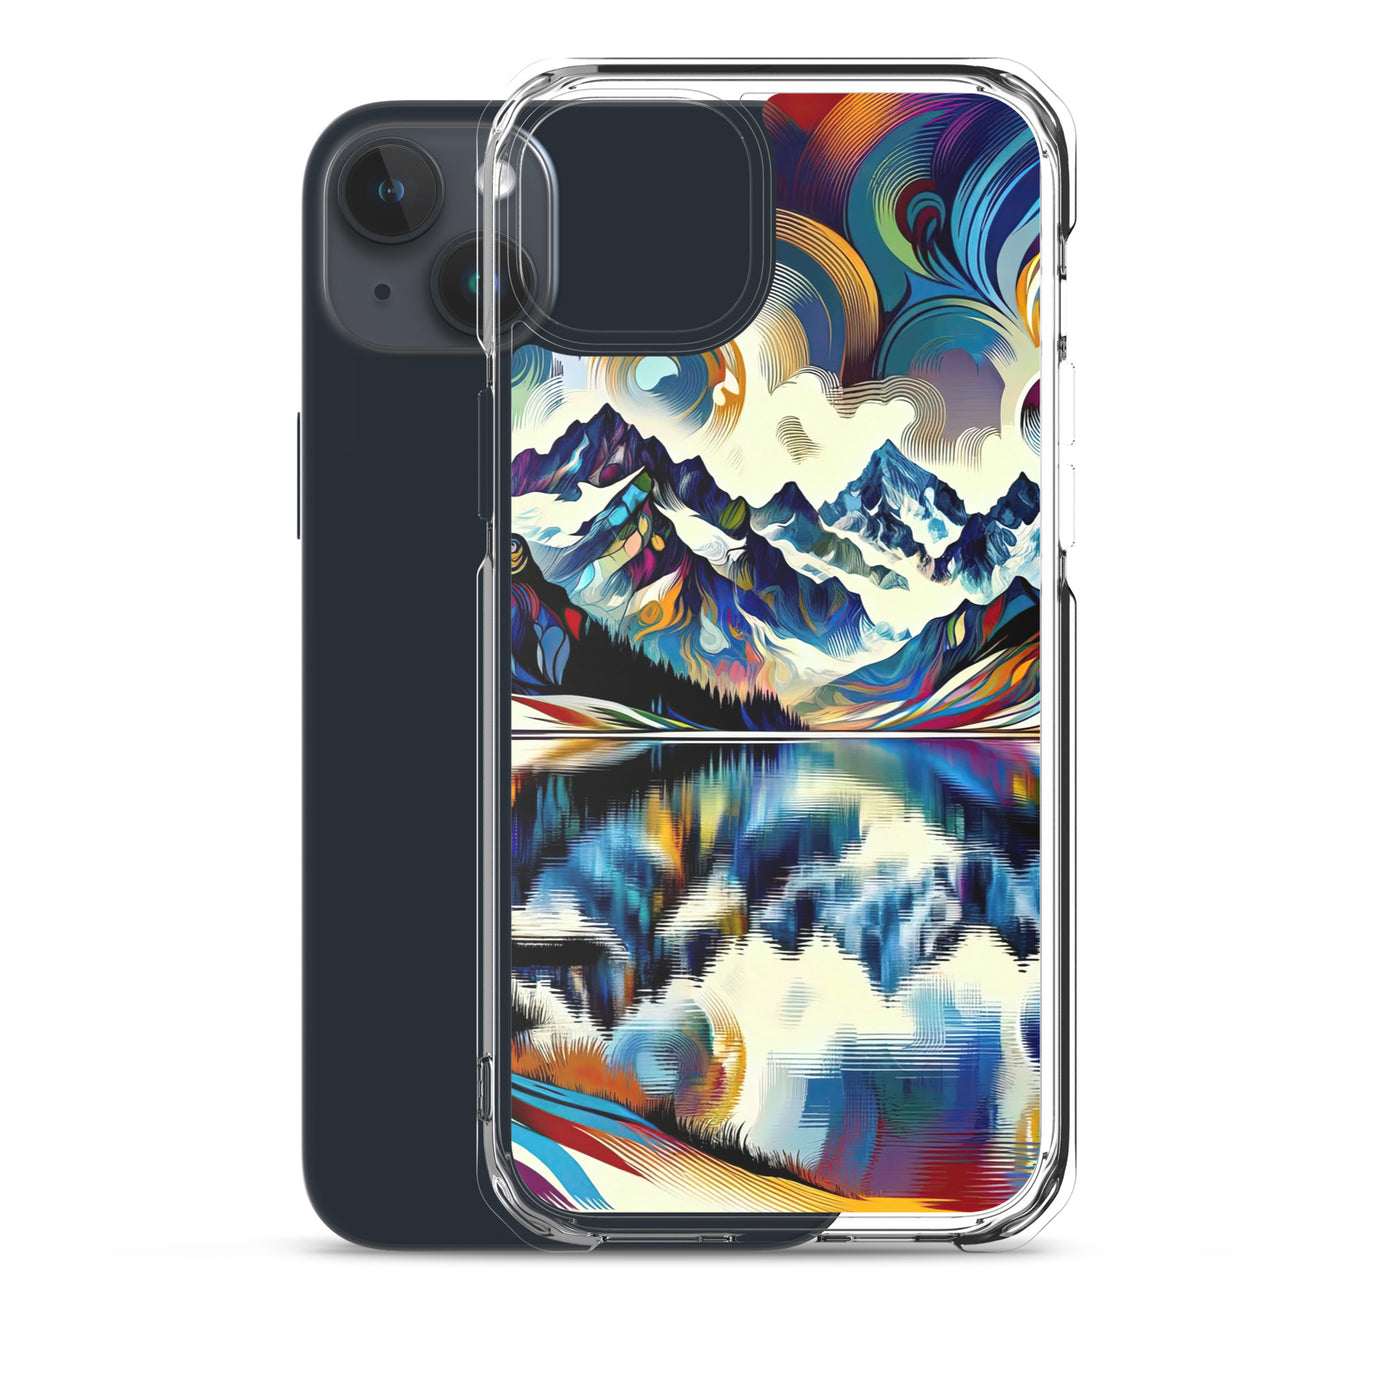 Alpensee im Zentrum eines abstrakt-expressionistischen Alpen-Kunstwerks - iPhone Schutzhülle (durchsichtig) berge xxx yyy zzz